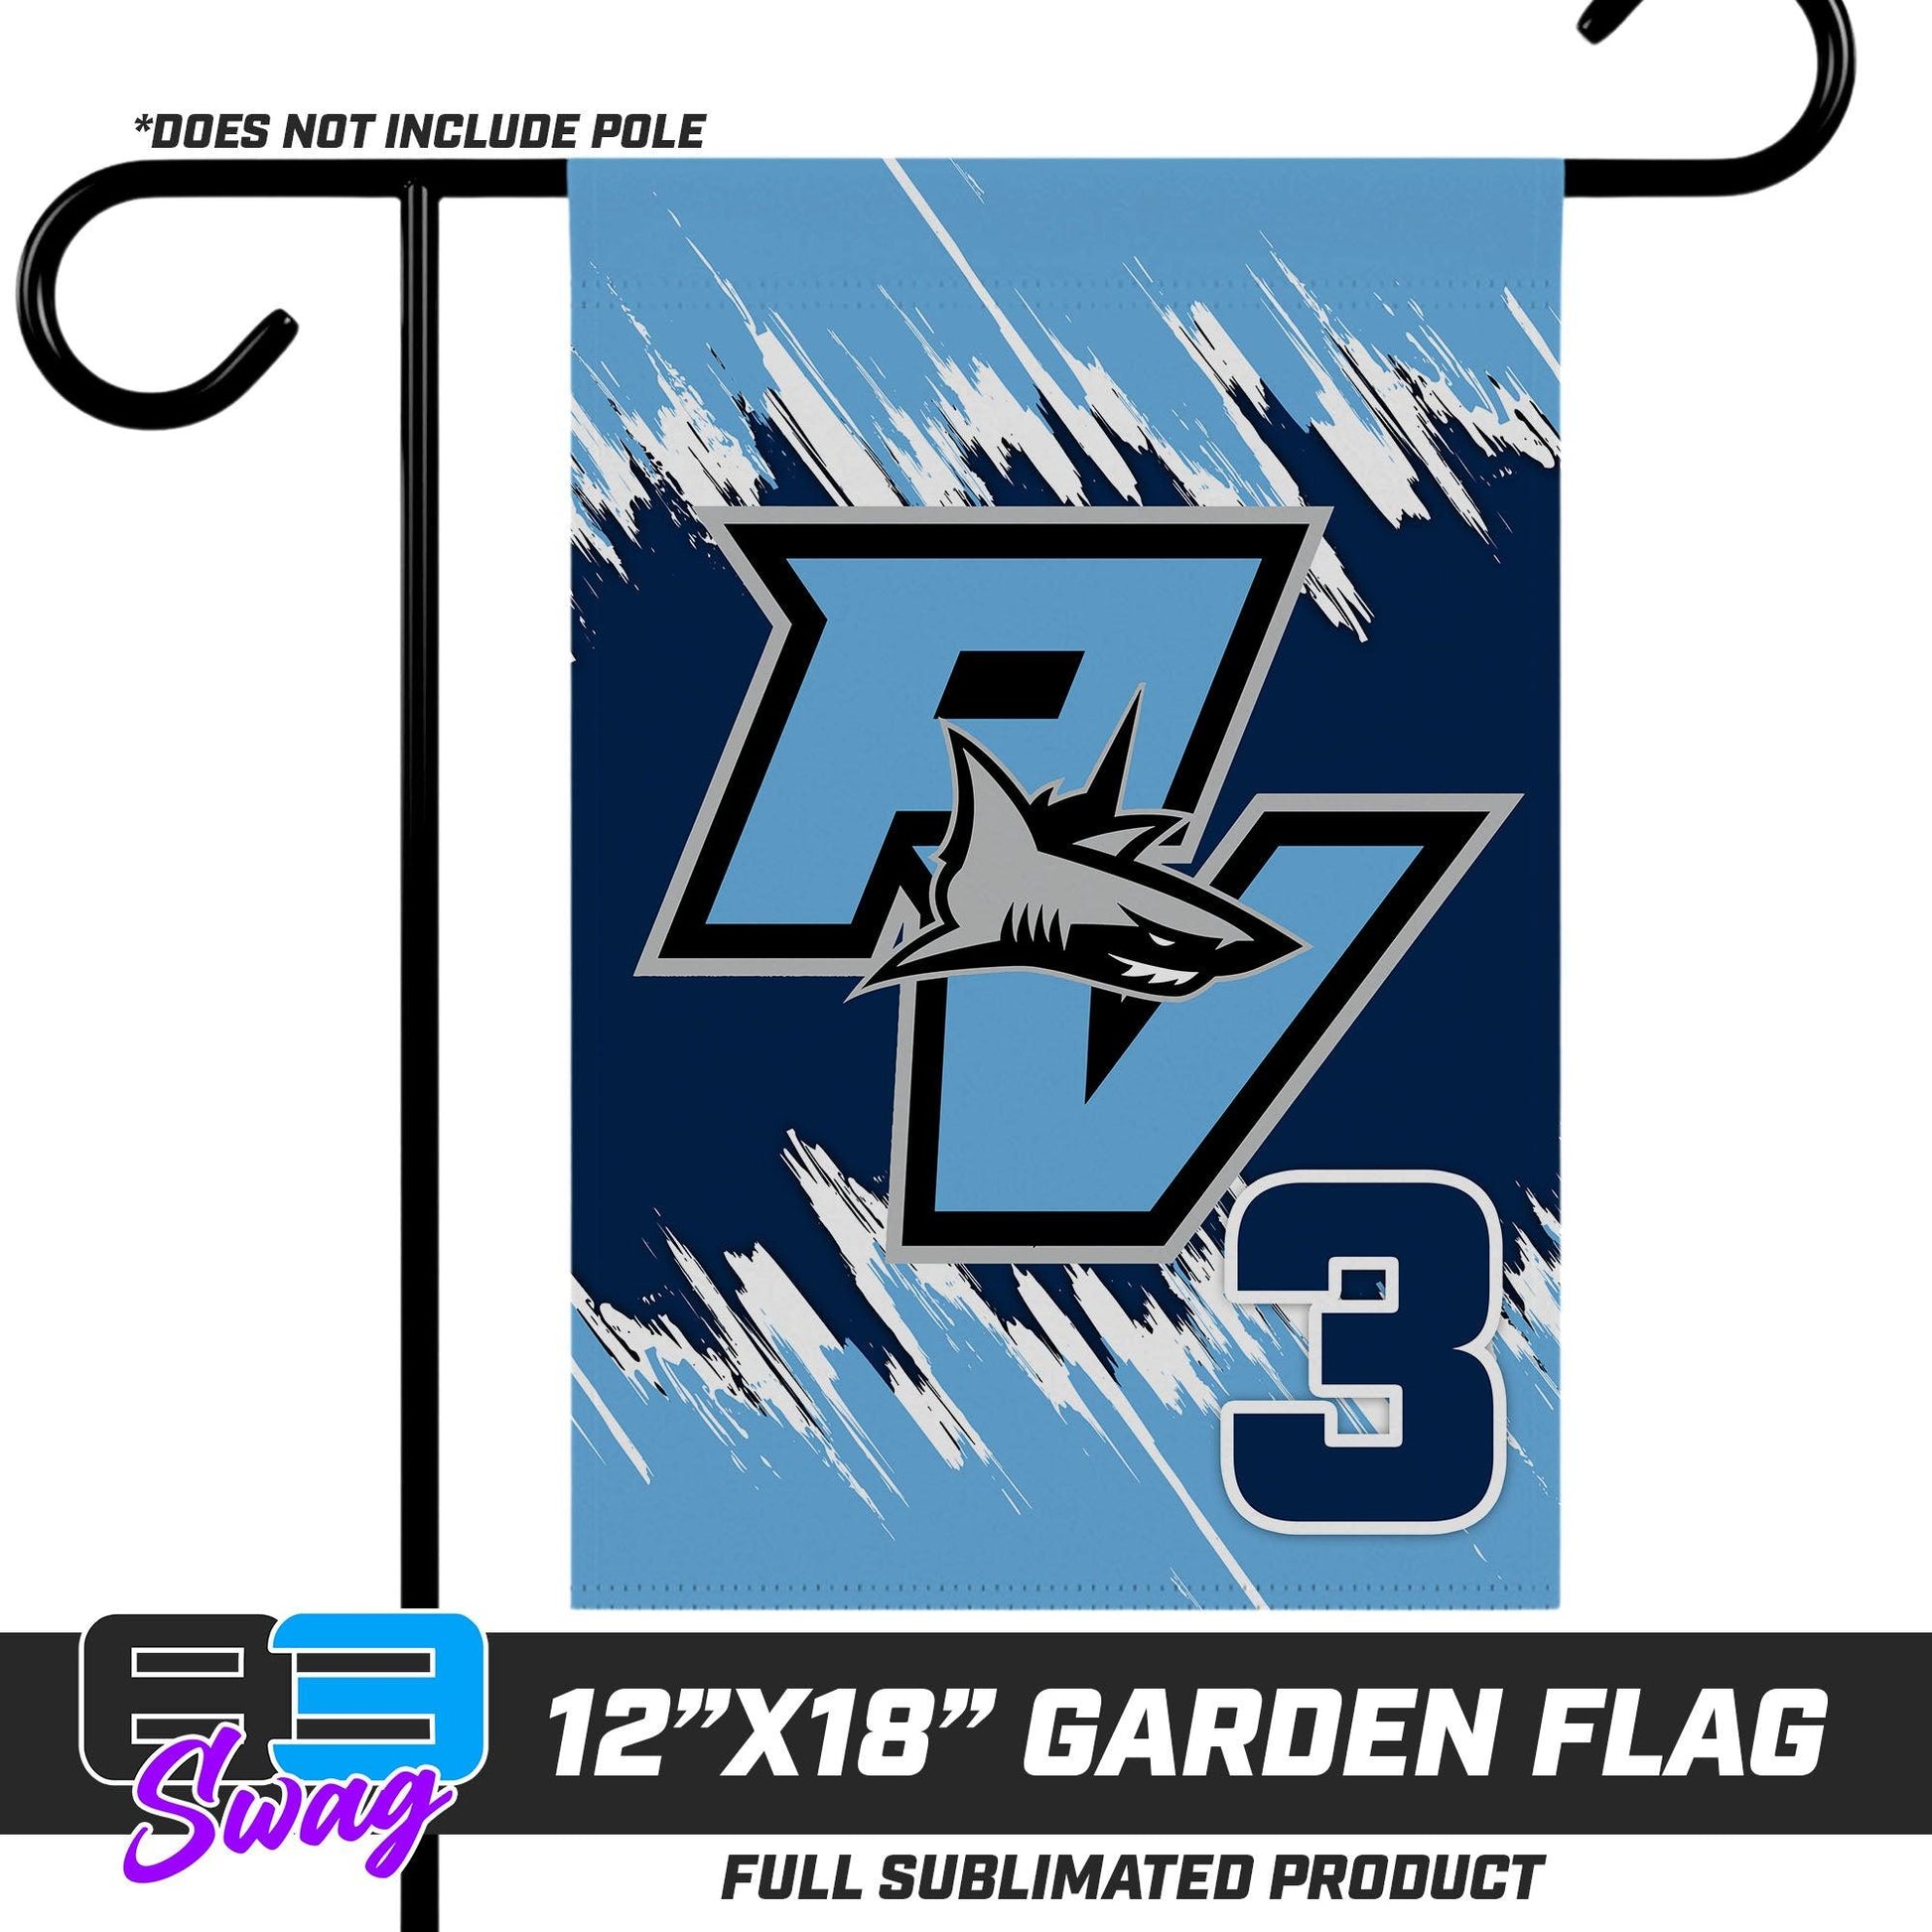 12"x18" Garden Flag - Ponte Vedra Sharks Baseball - 83Swag